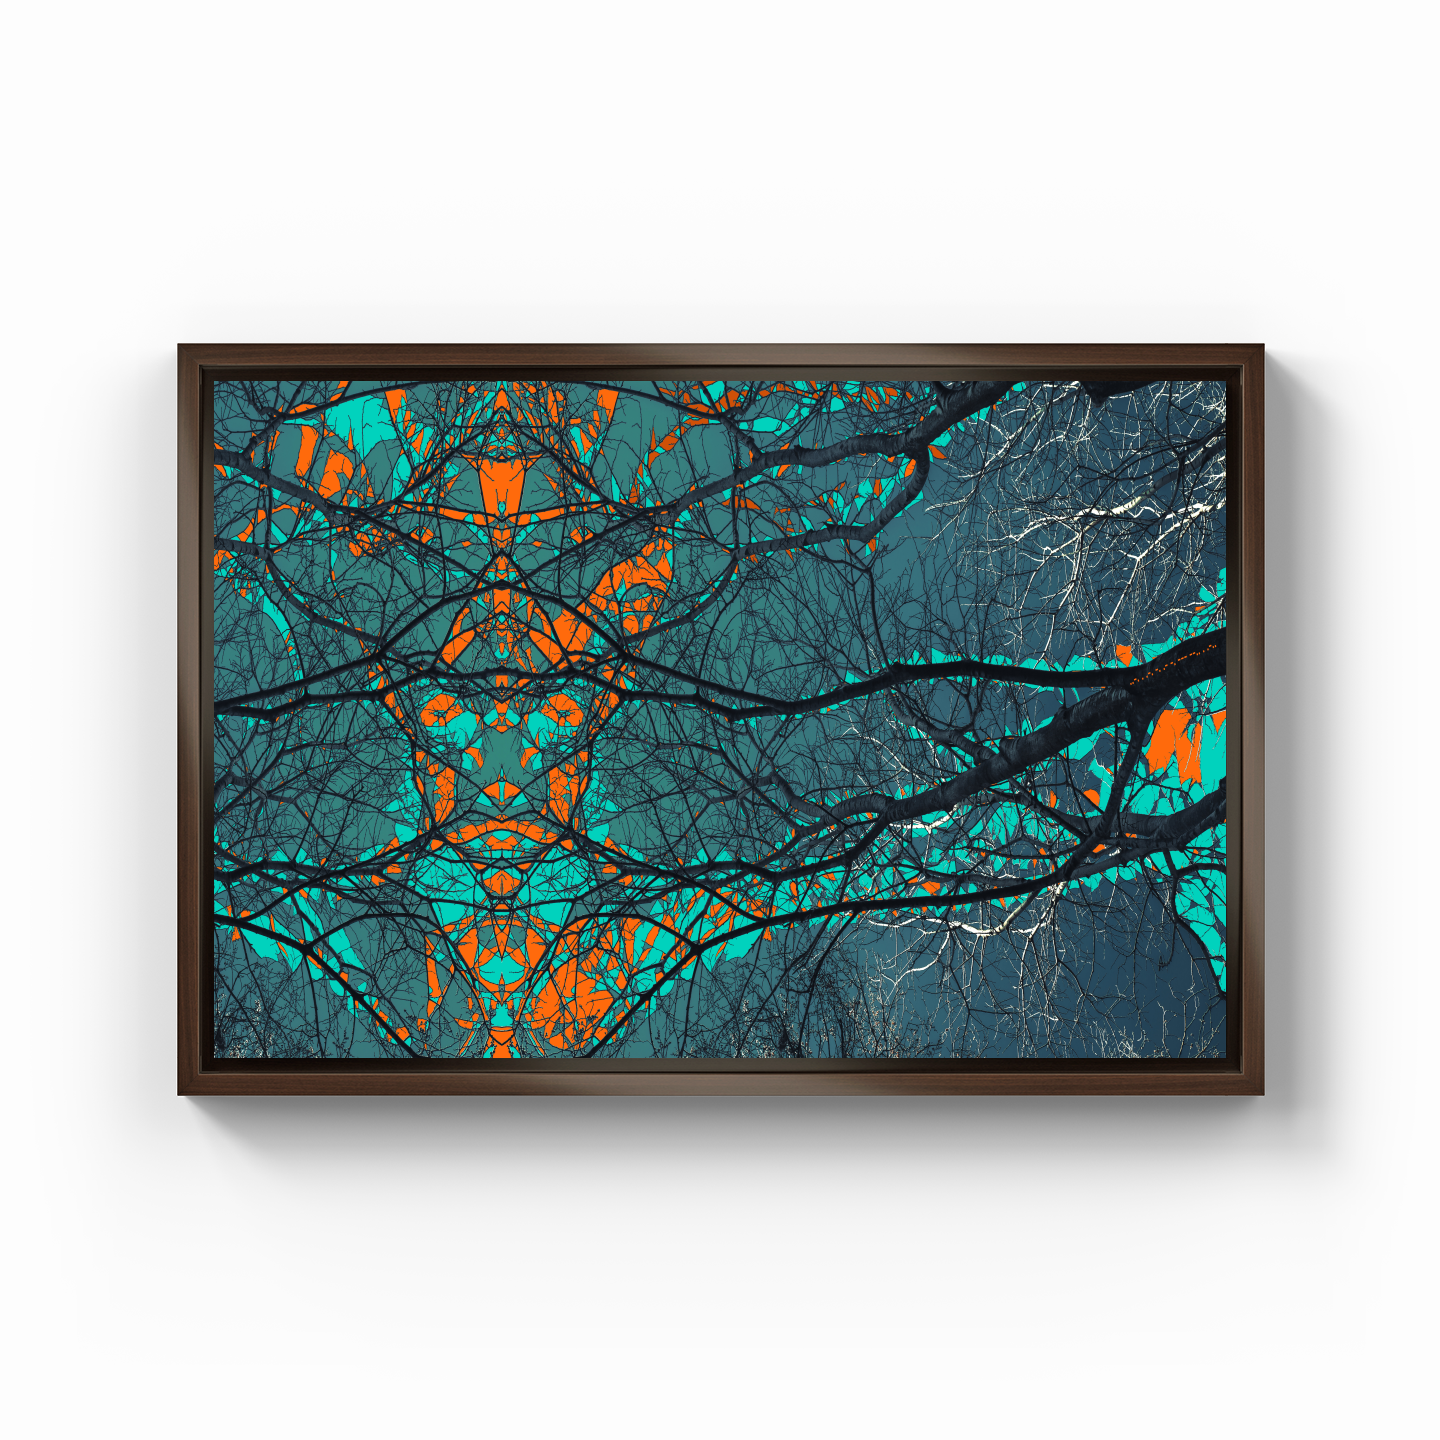 Simetri Ağaç Dal Orman Ekspresyonist Abstrakt Manzara No 18 - Kanvas Tablo